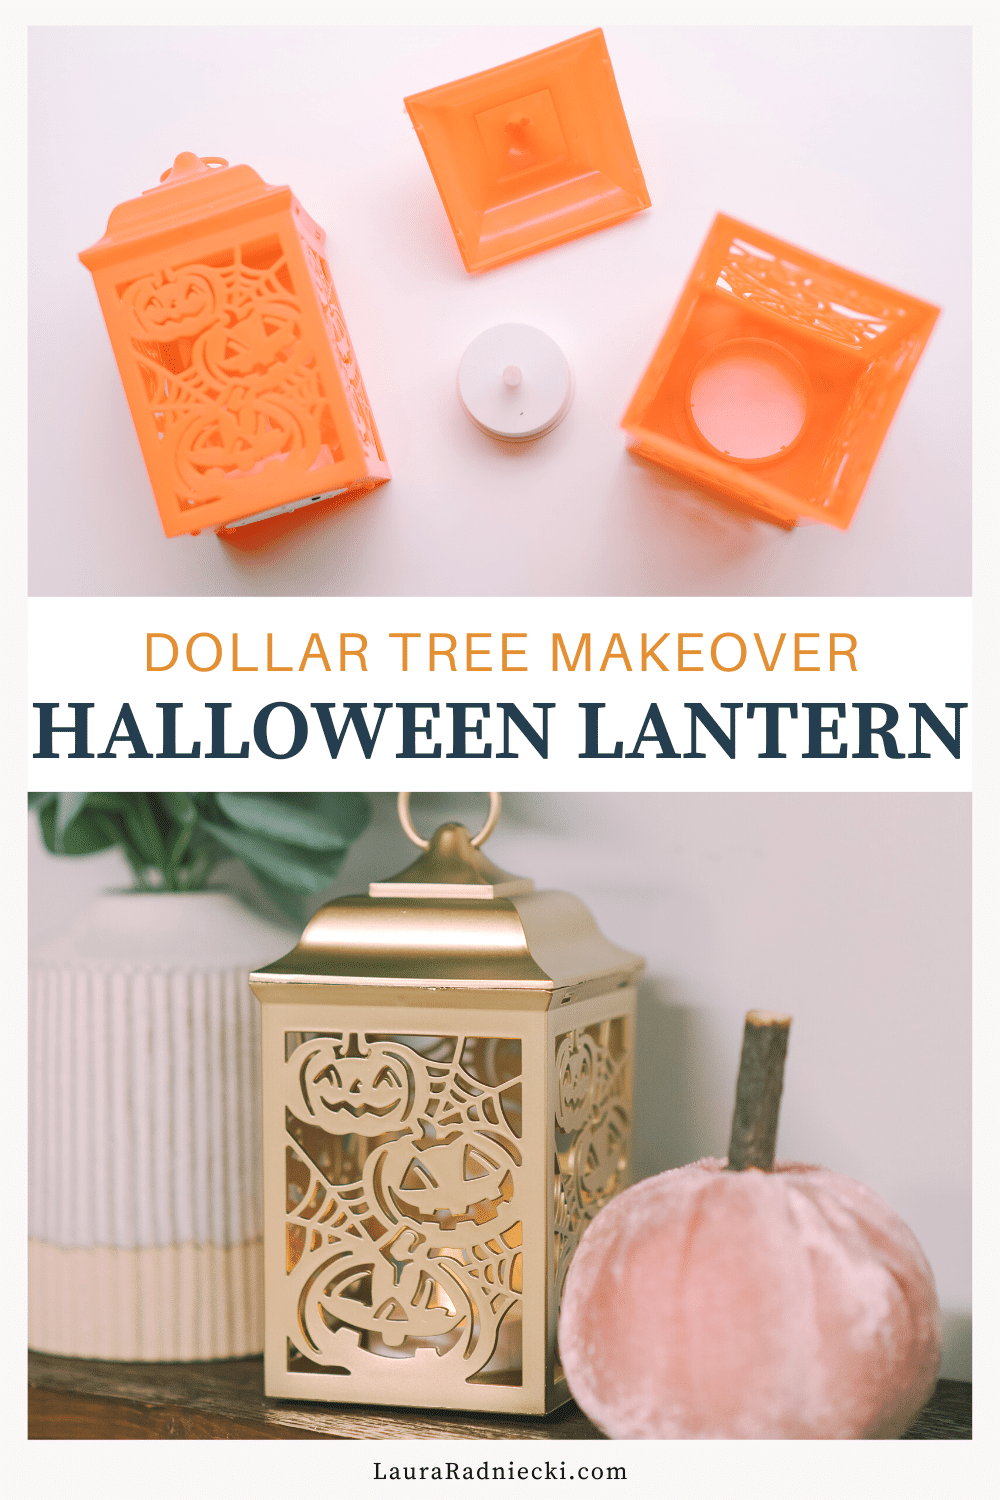 How to Make DIY Halloween Lanterns